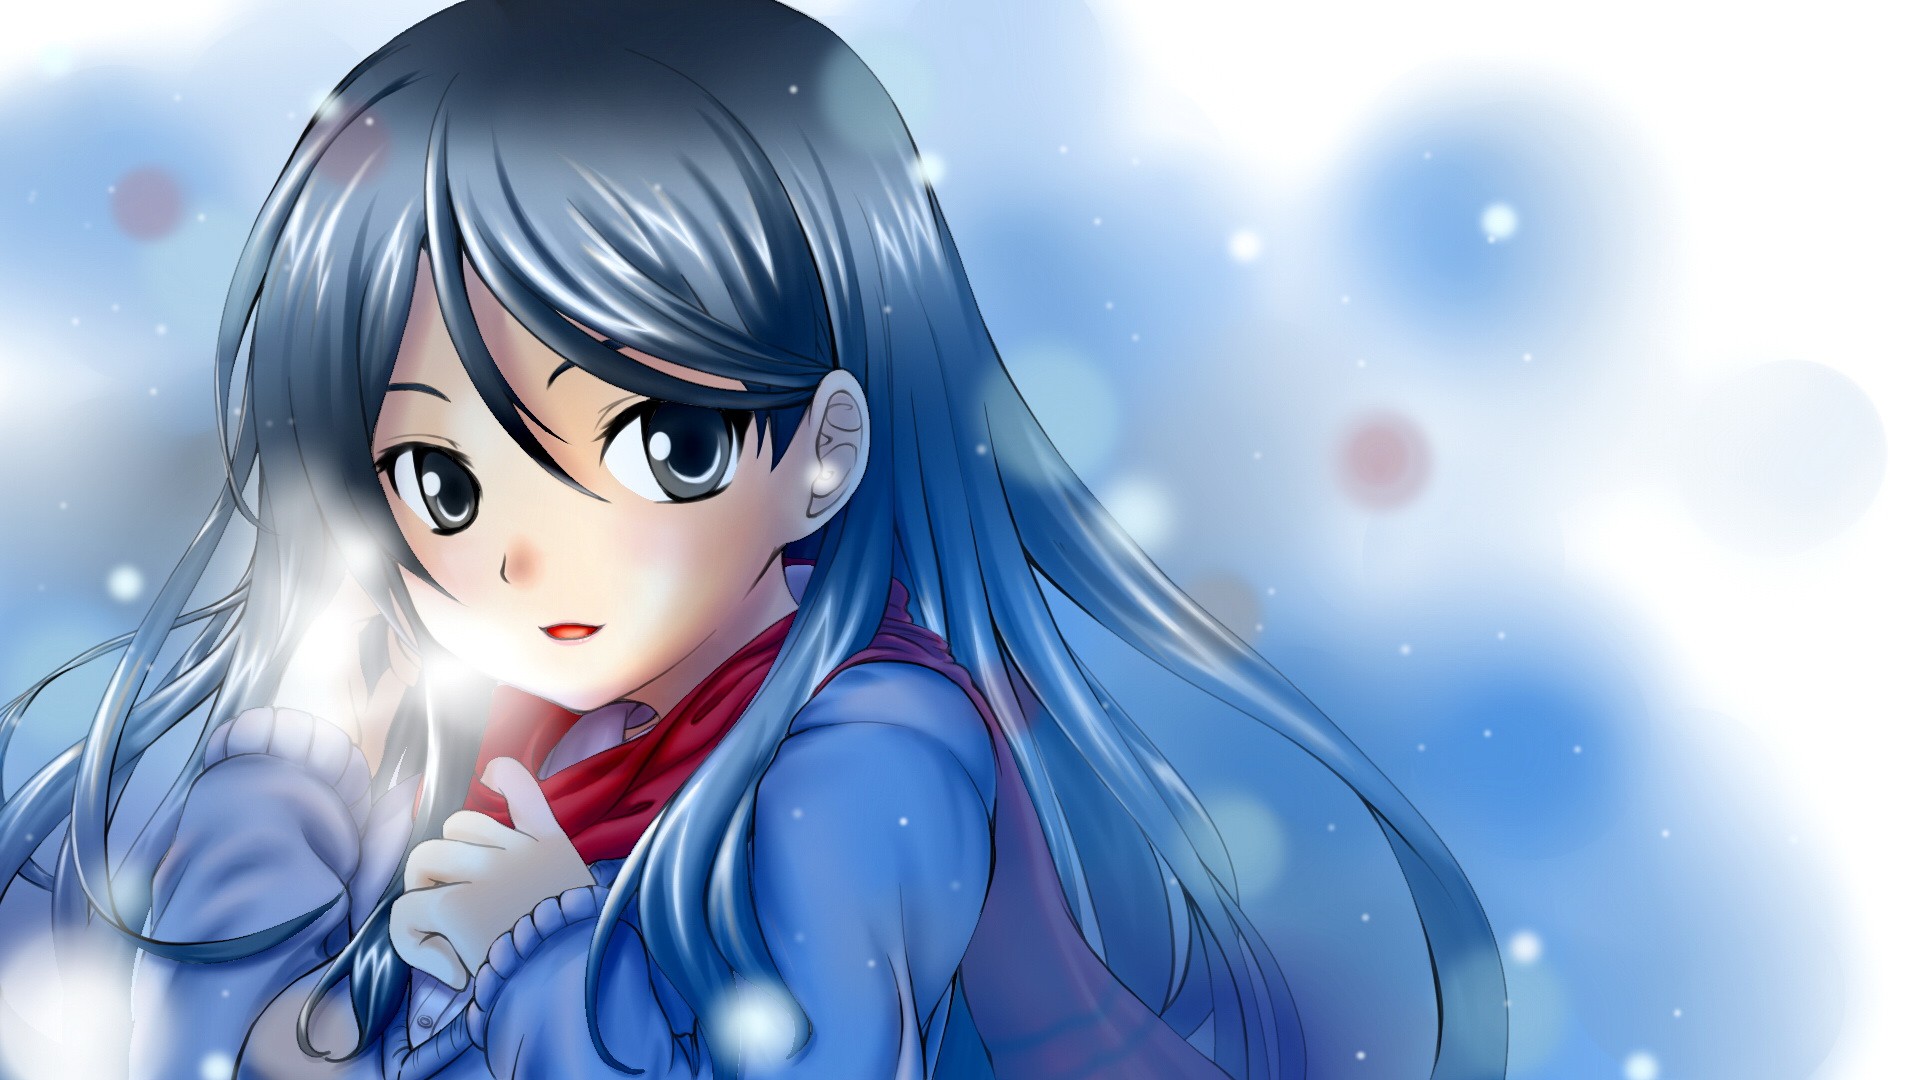 Hãy thả mình vào không khí mùa đông giá lạnh của anime với hình ảnh những cô gái dễ thương, tóc dài và miệt mài chống chọi với tuyết và giá rét. Đôi mắt lạnh lùng sẽ khiến bạn cảm thấy tình cảm và sự cô đơn của họ.